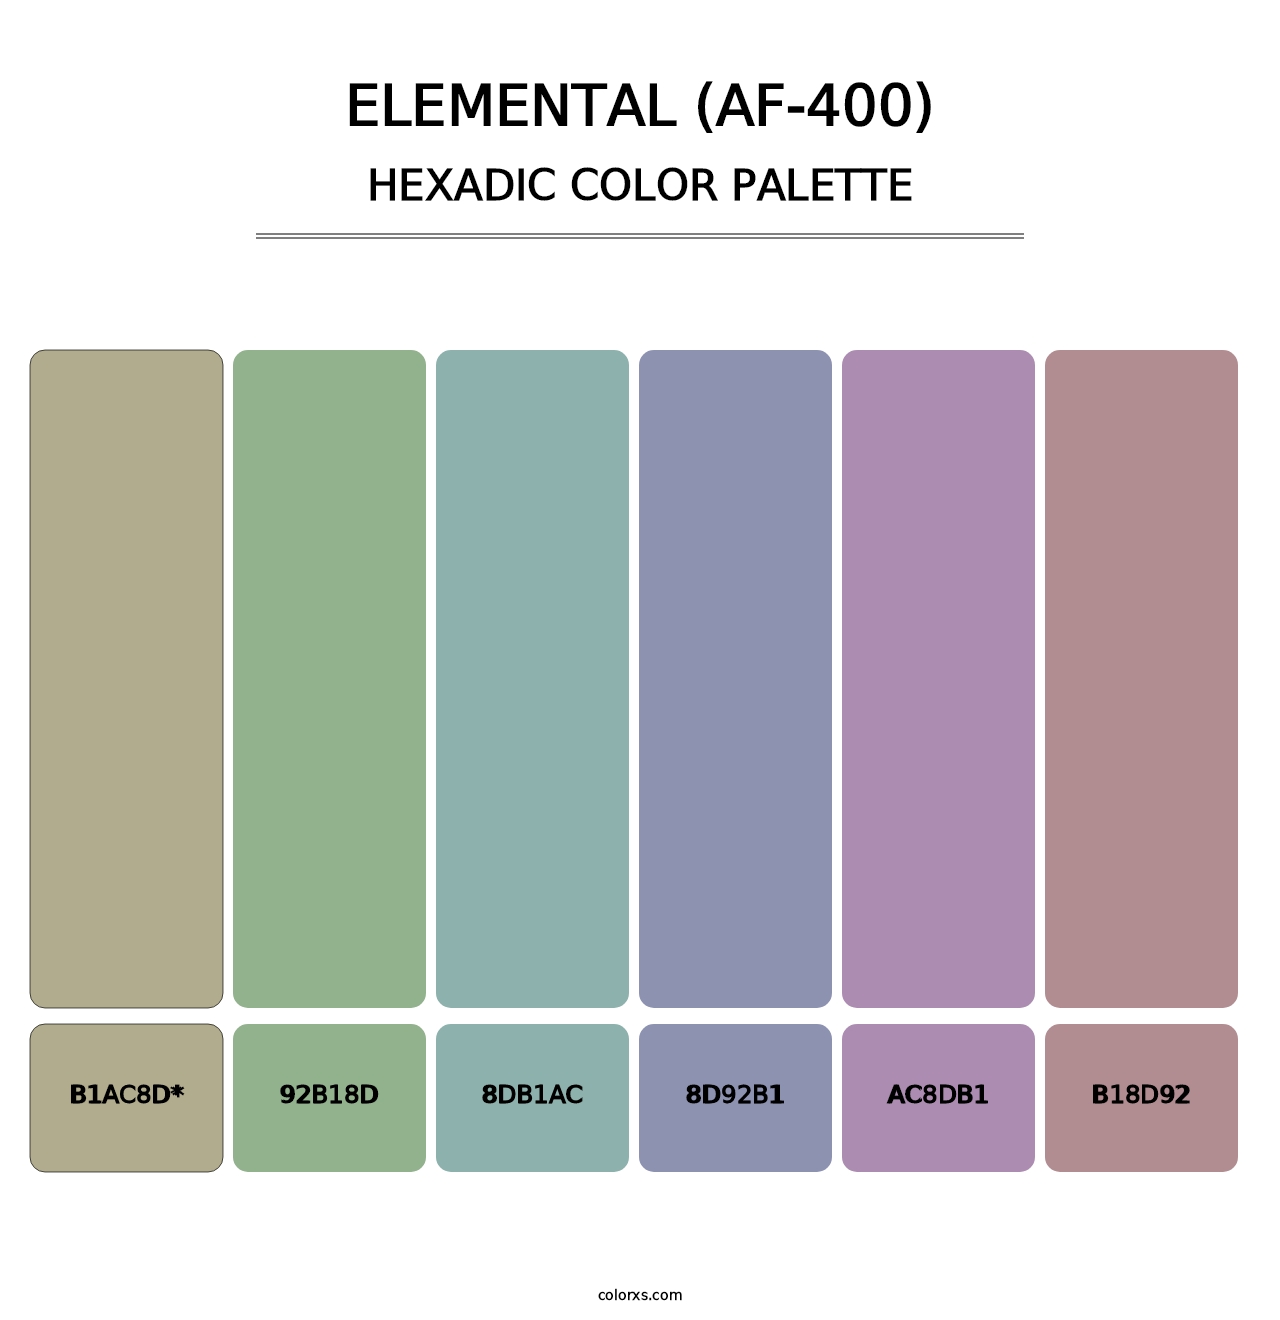 Elemental (AF-400) - Hexadic Color Palette